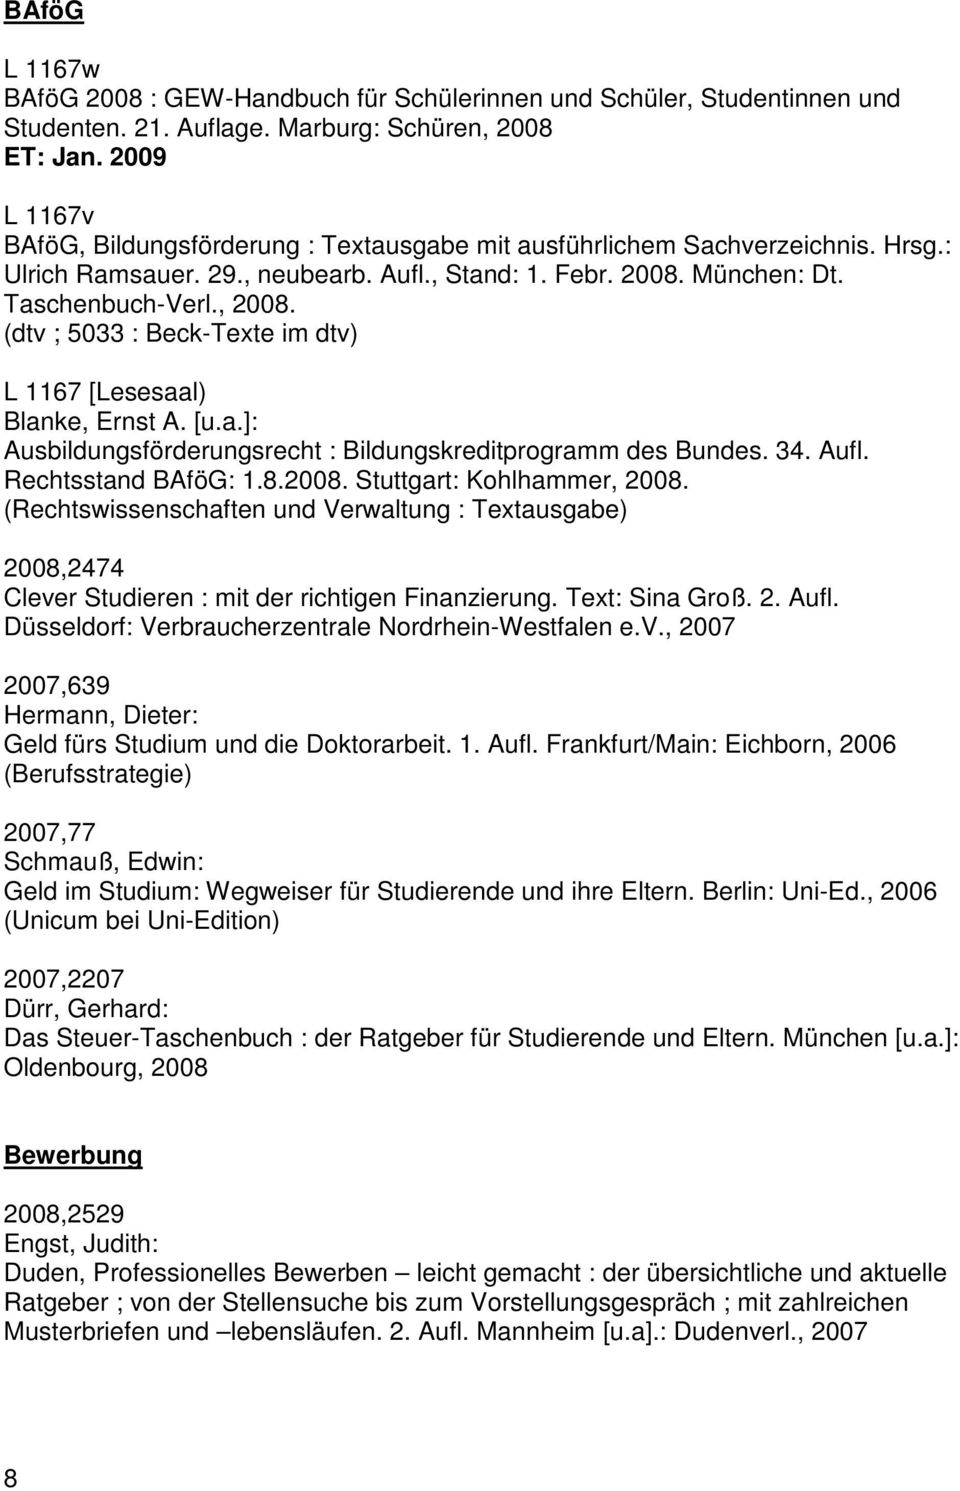 (dtv ; 5033 : Beck-Texte im dtv) L 1167 [Lesesaal) Blanke, Ernst A. [u.a.]: Ausbildungsförderungsrecht : Bildungskreditprogramm des Bundes. 34. Aufl. Rechtsstand BAföG: 1.8.2008.